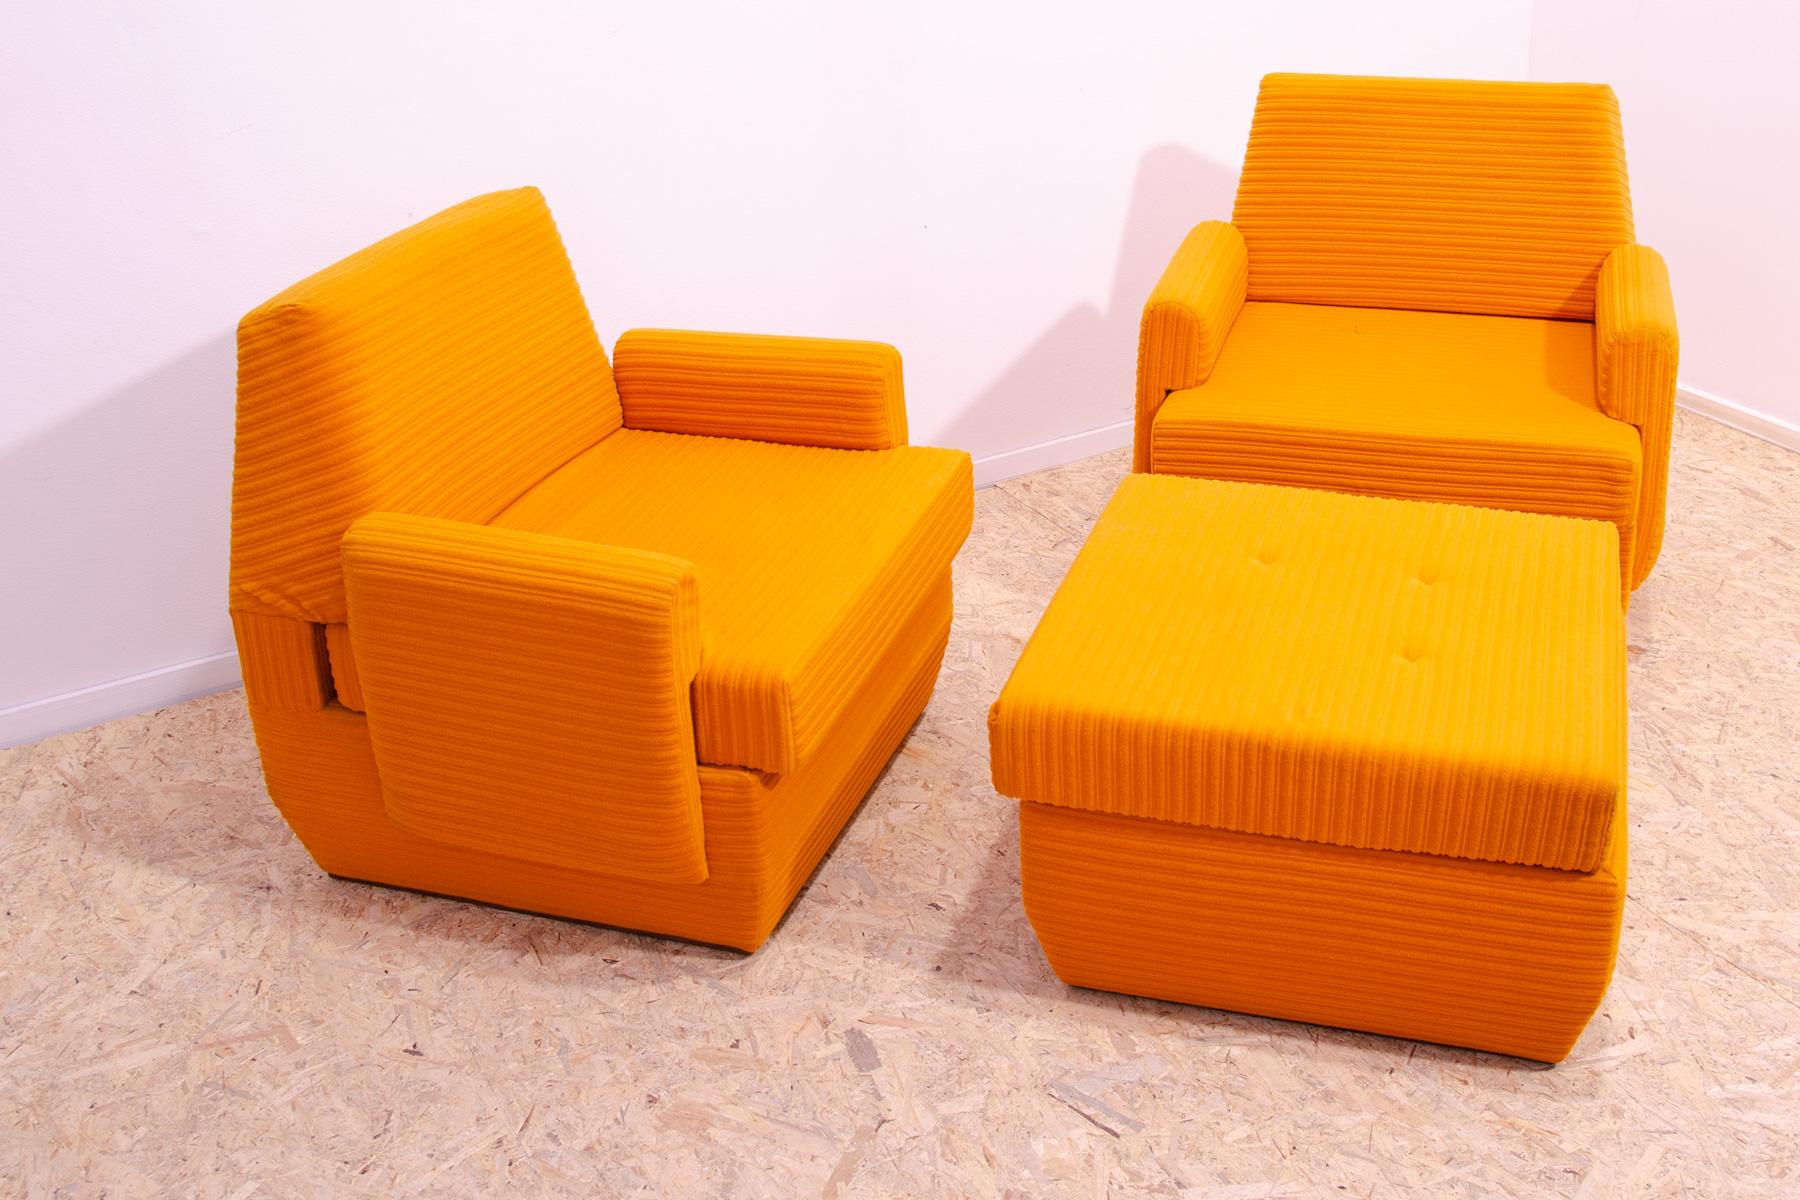 Cet ensemble faisait partie d'un ensemble de salon fabriqué par la société Jitona dans les années 1970. Il est composé de deux fauteuils et d'un pouf. Vous pouvez aussi tout simplement le transformer en lit.
Il représente un exemple typique du